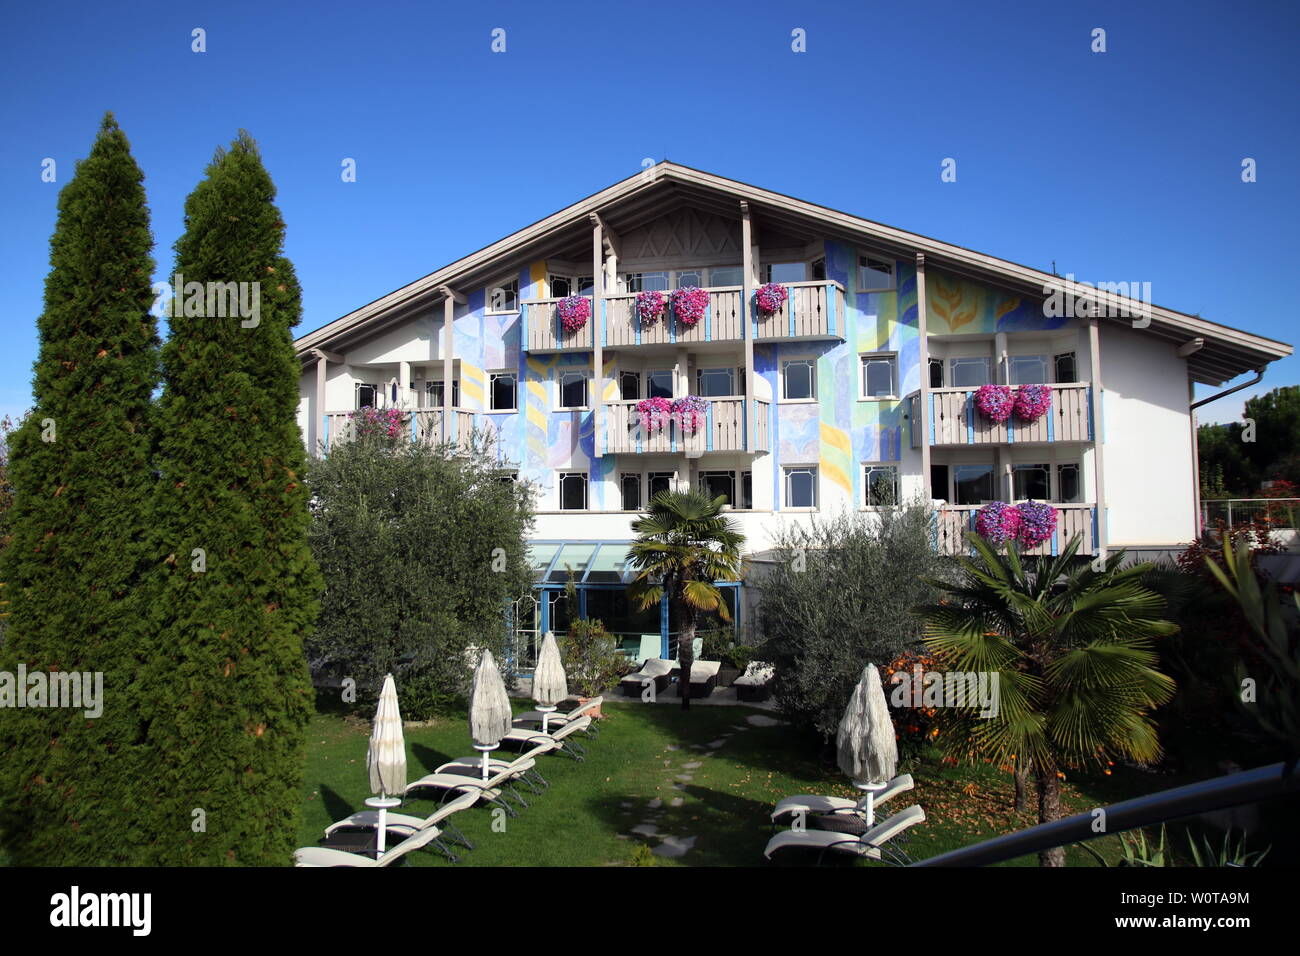 Idyllisch gelegen: Teamhotel 'Weinegg' in Eppan/Südtirol für DFB-WM-Trainingslager 2018 Suedtirol Stock Photo